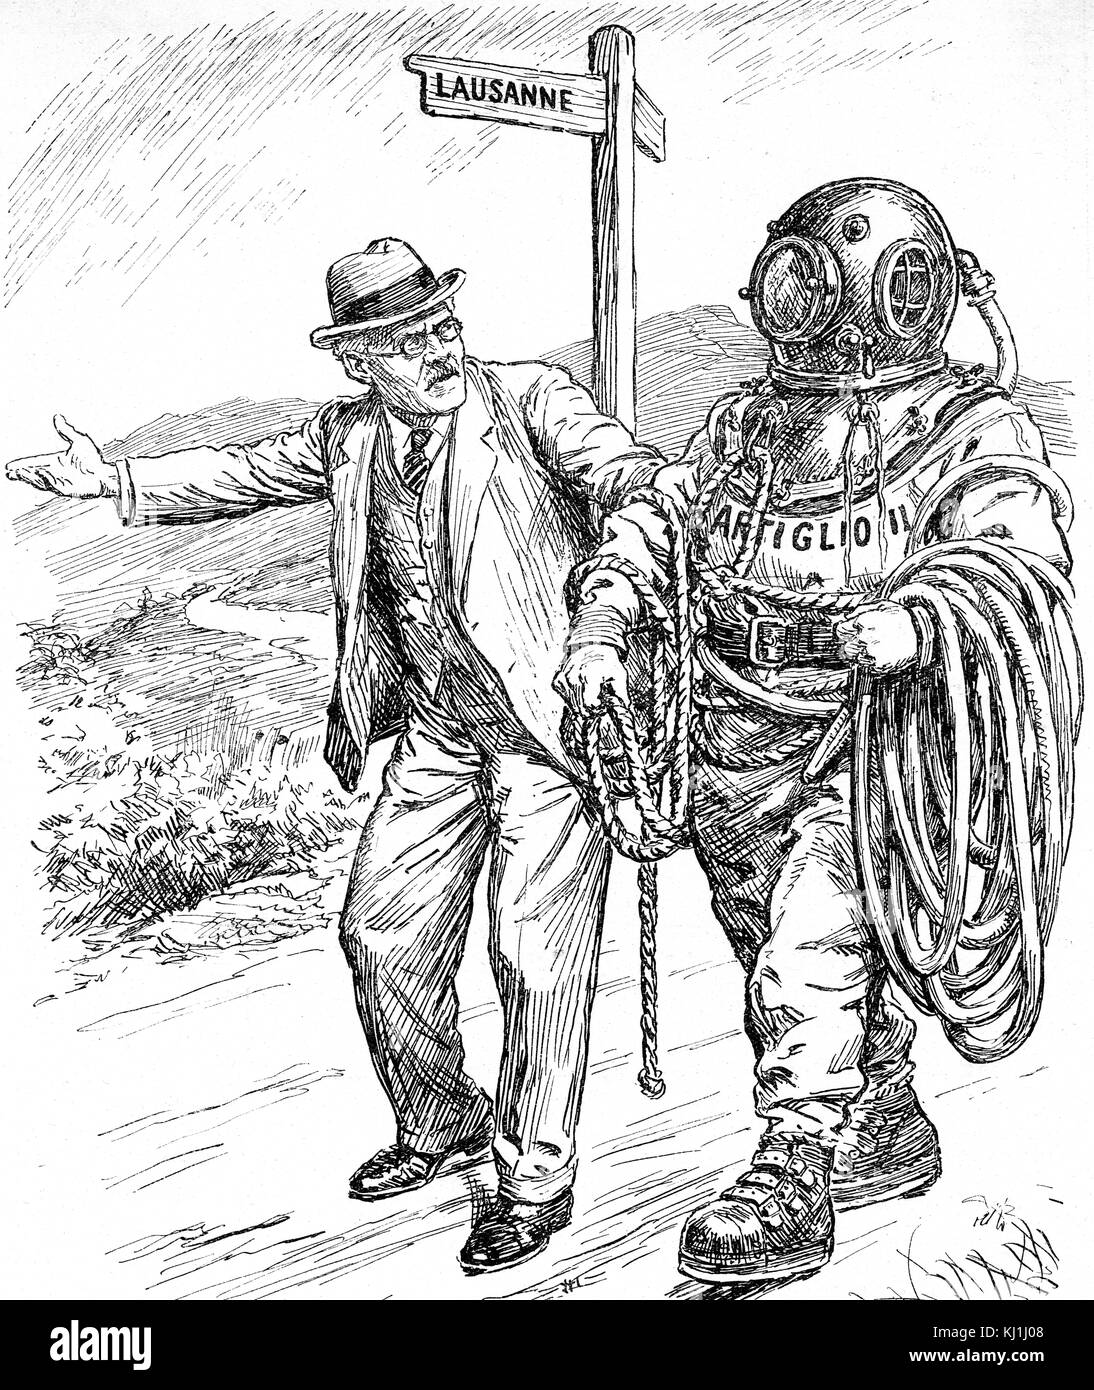 Vignetta satirica raffigurante Ramsay MacDonald (1866-1937) uno statista britannico e primo ministro del partito laburista. In data xx secolo Foto Stock